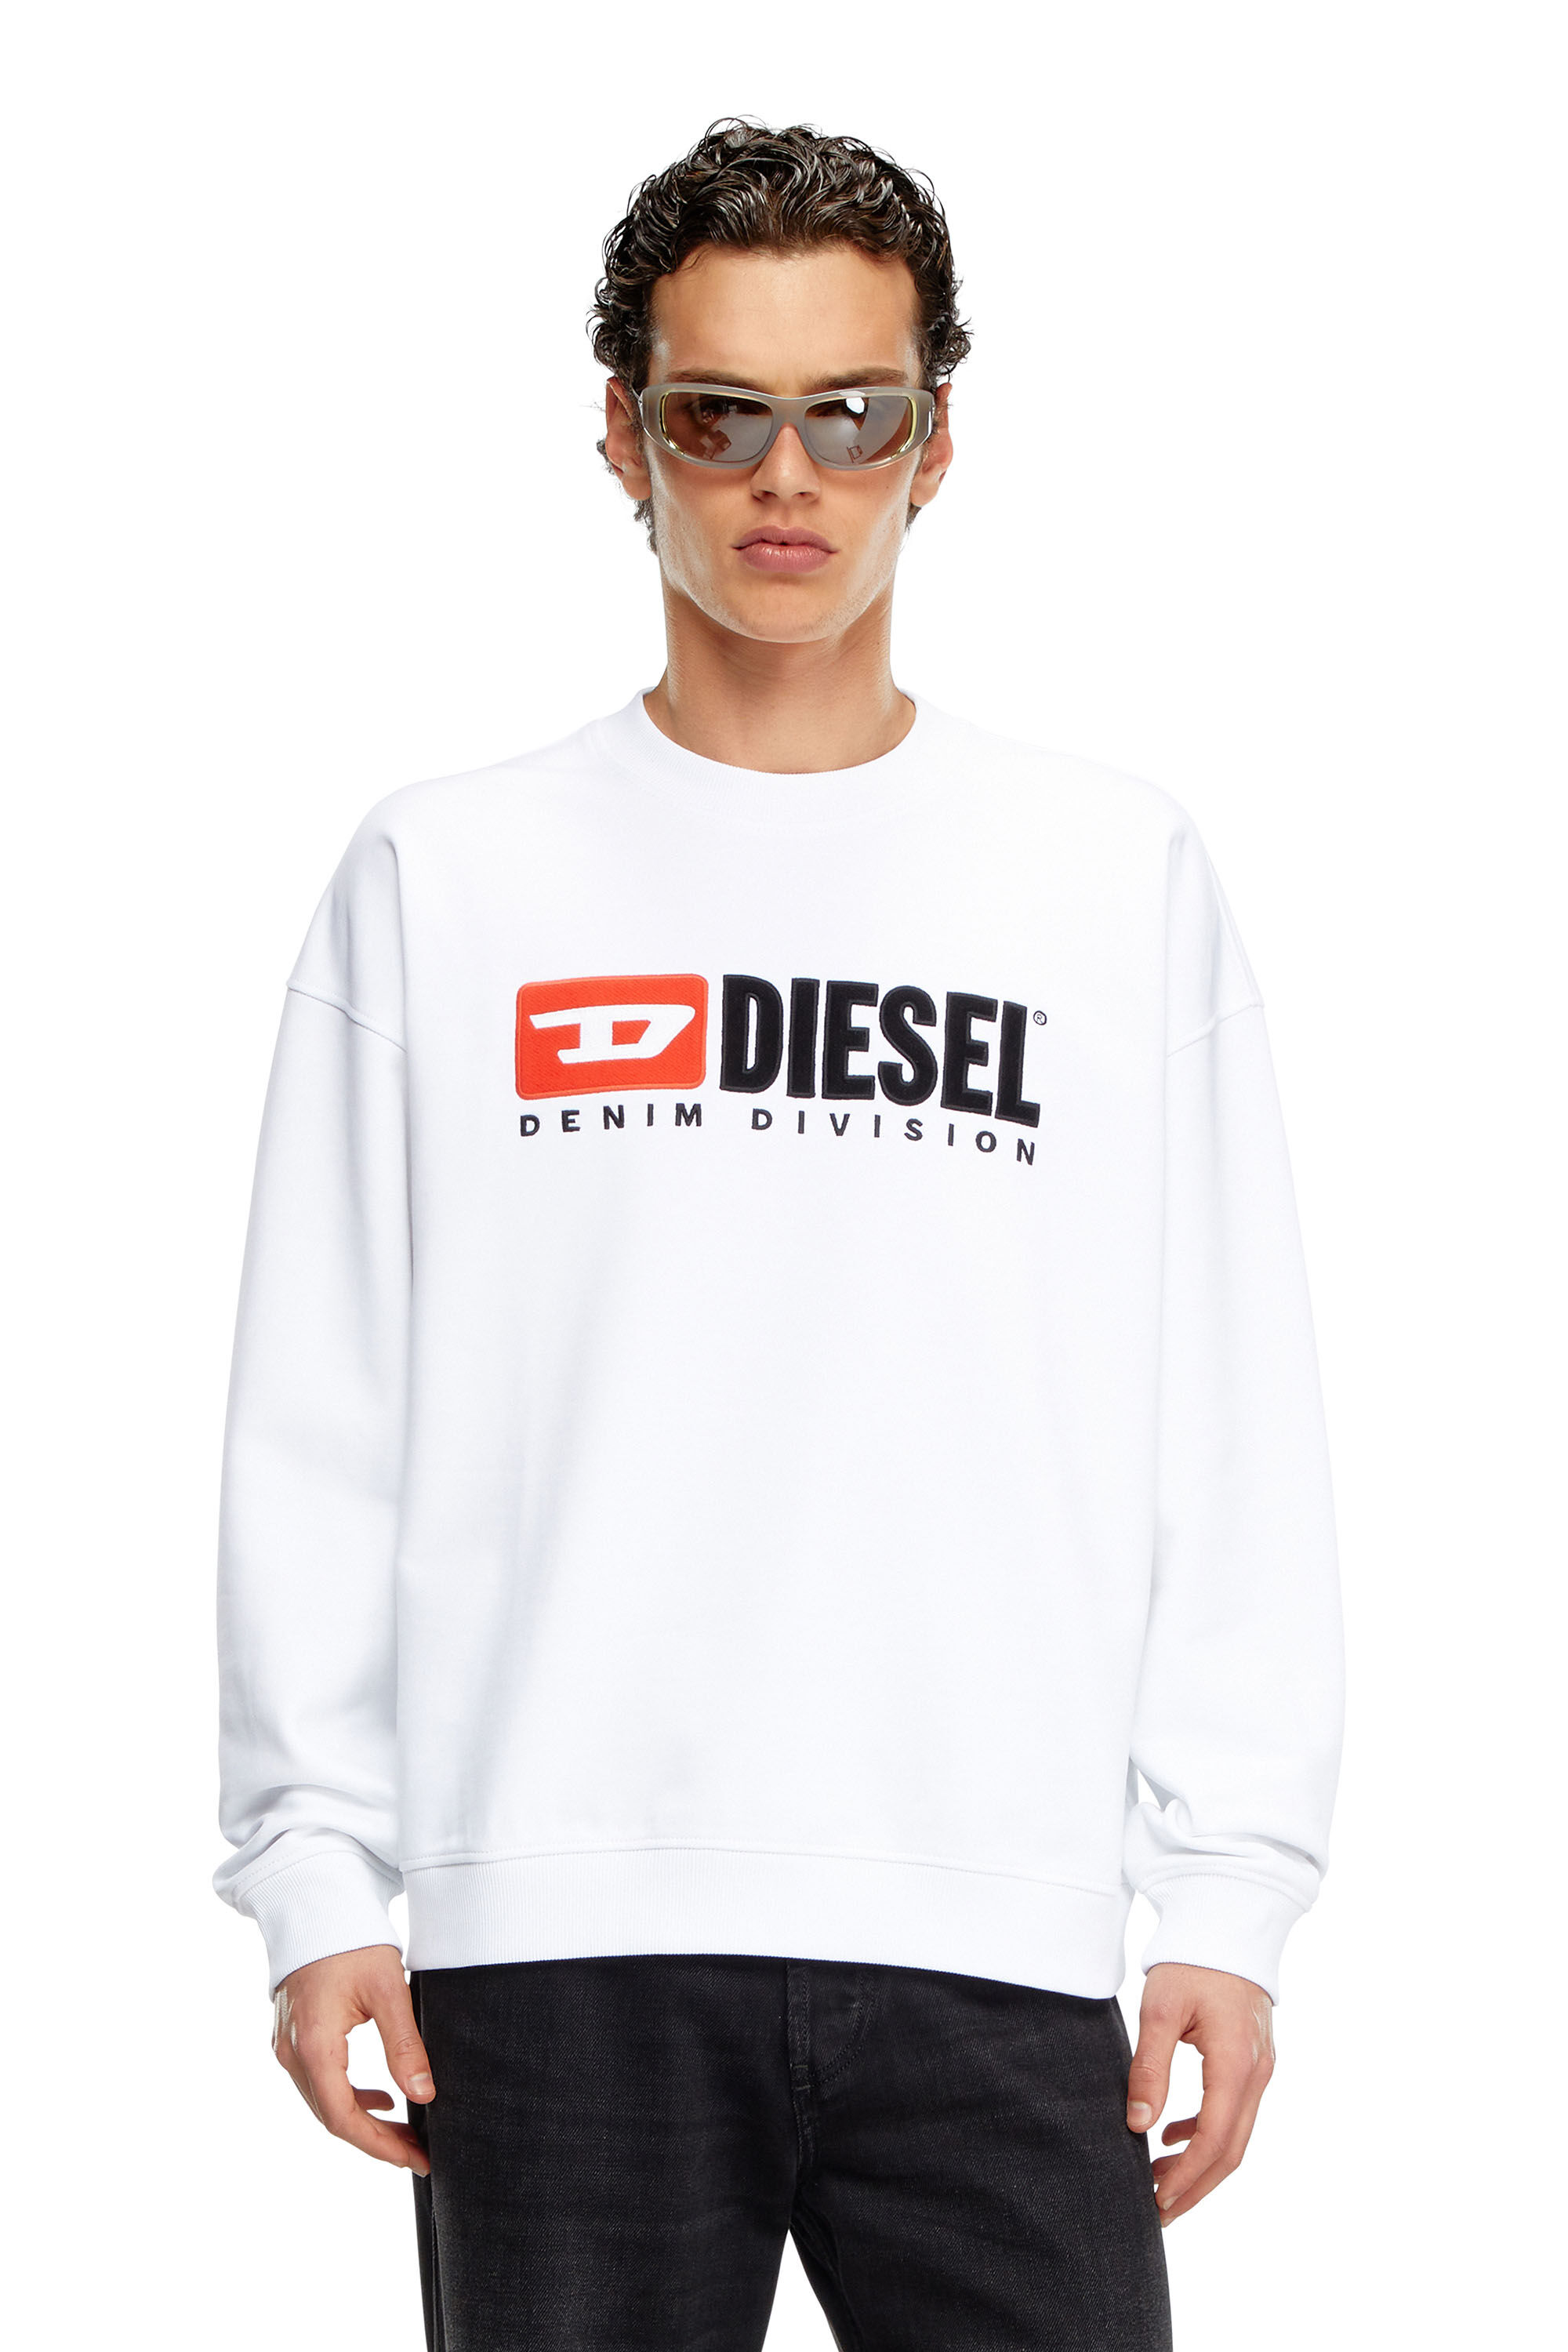 Diesel - S-BOXT-DIV, Herren Sweatshirt mit Denim Division-Logo in Weiss - Image 3